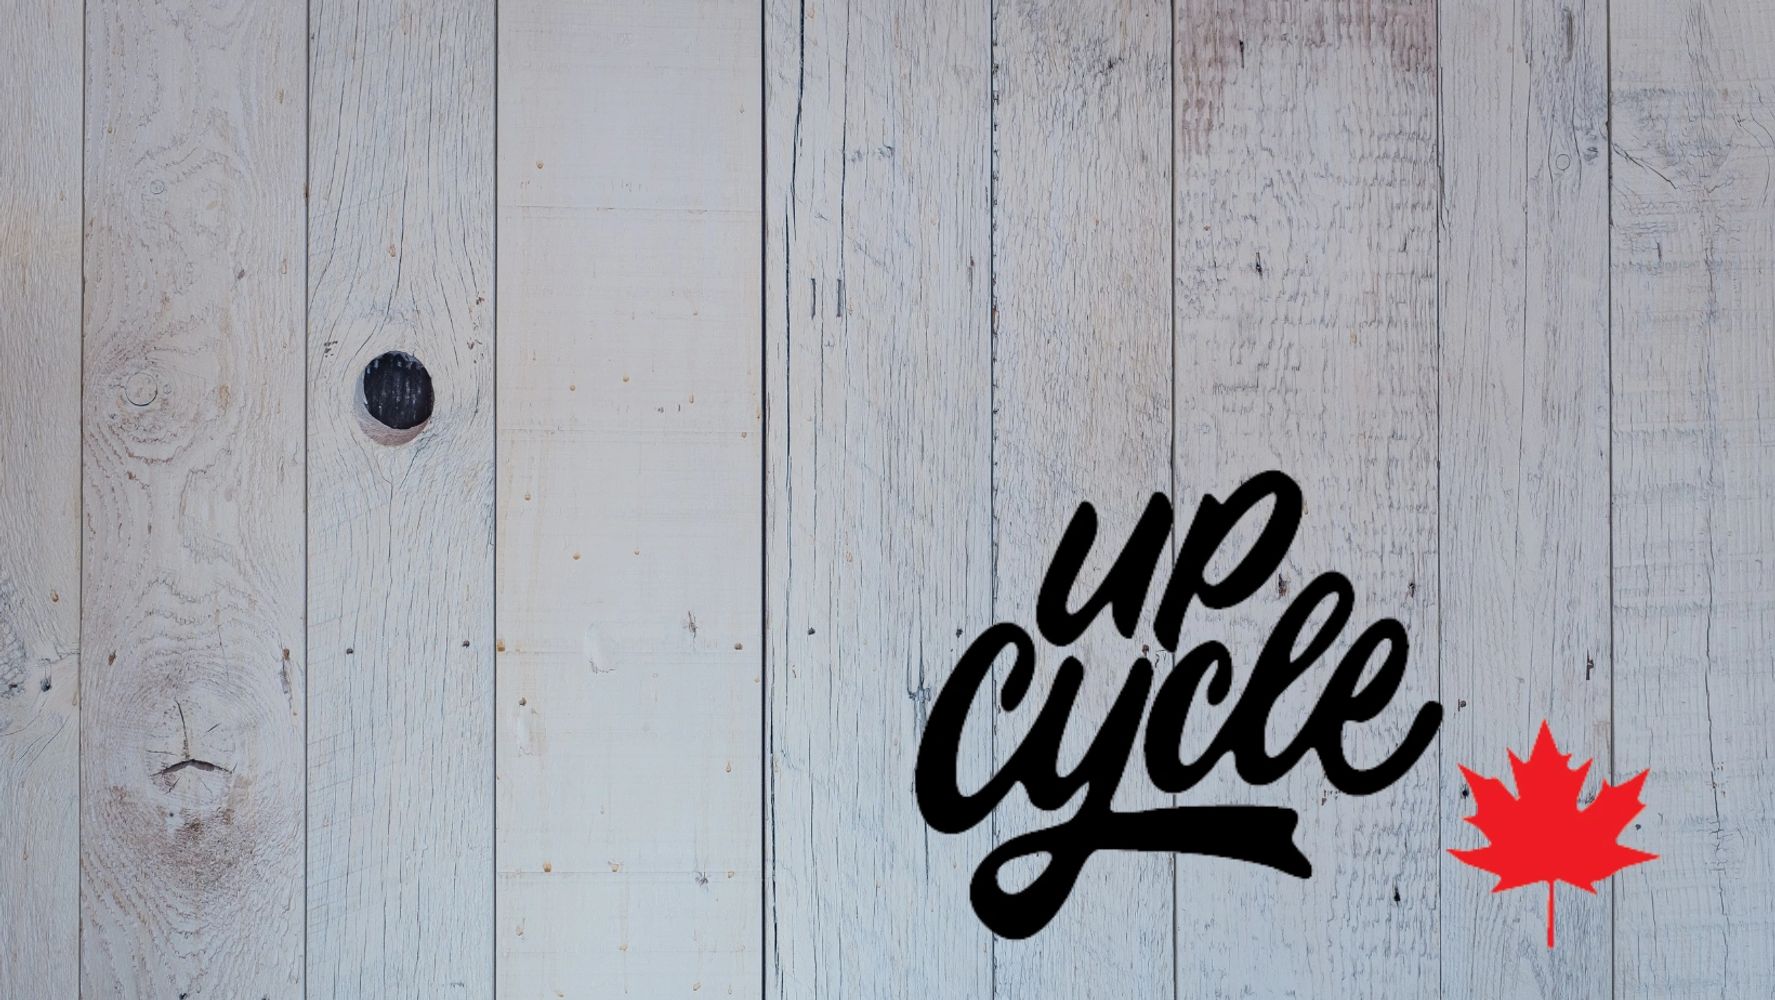 UpCycle Canada Logo on wood background